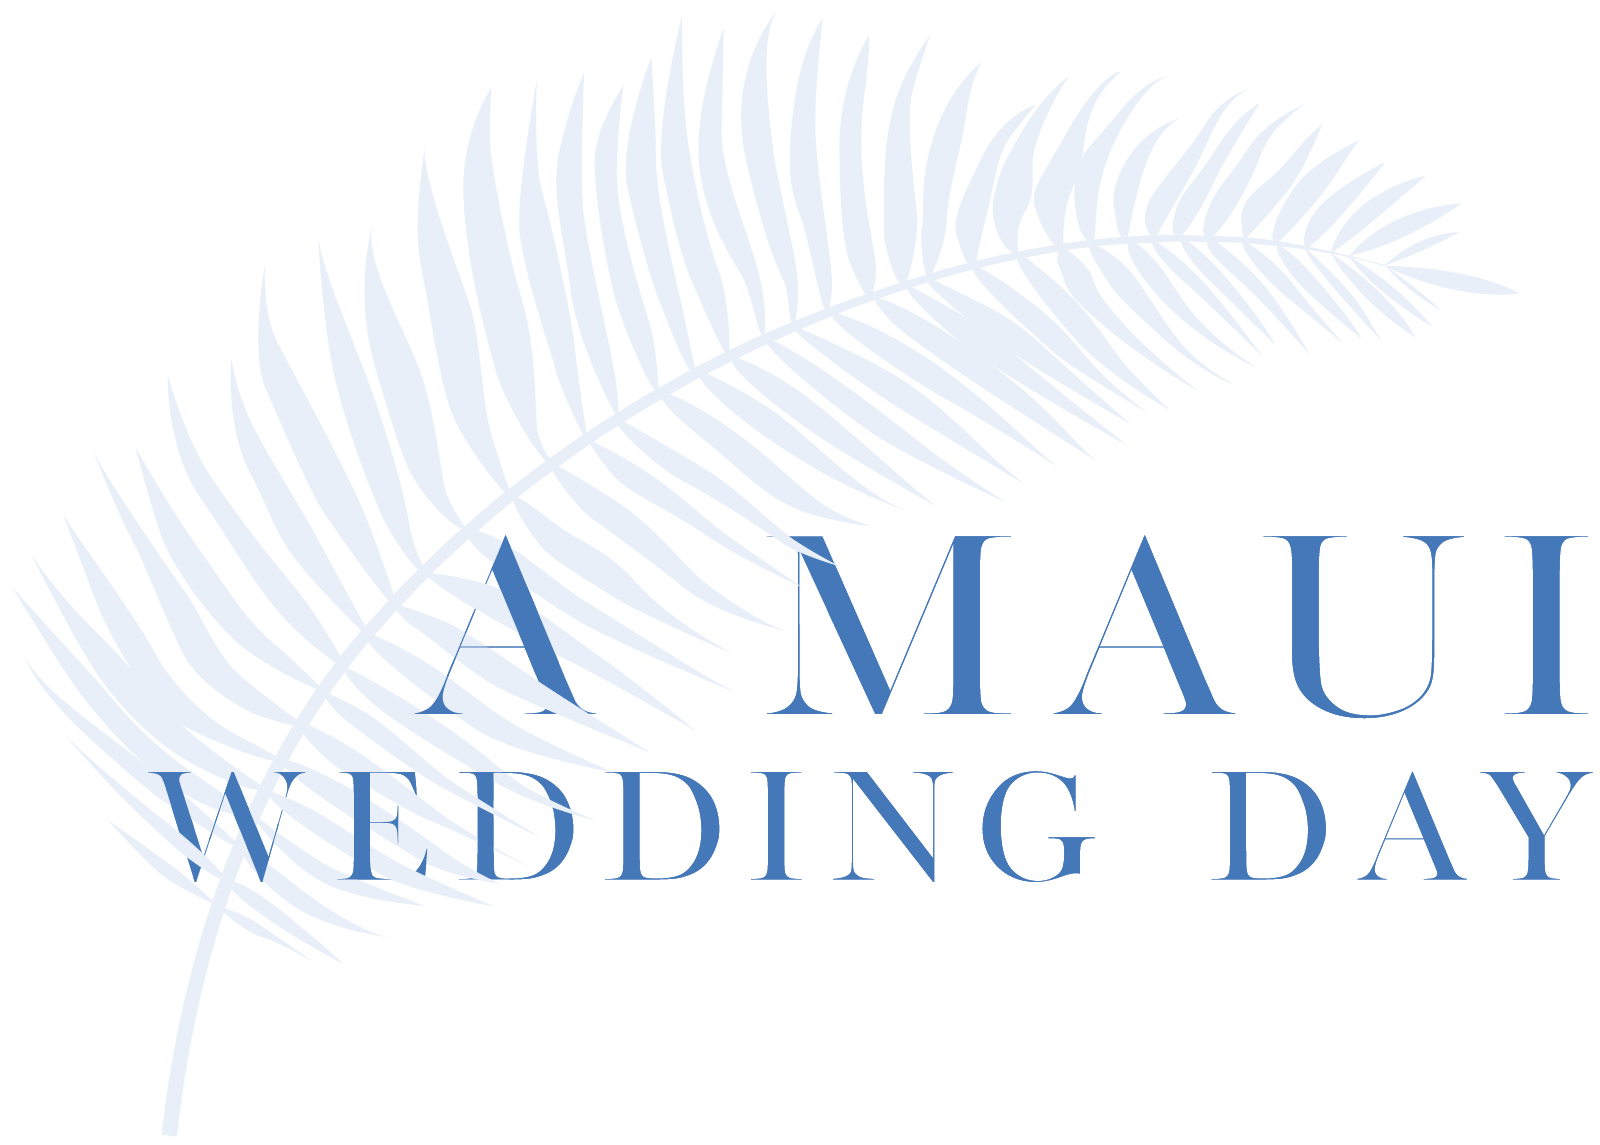 A Maui Wedding Day